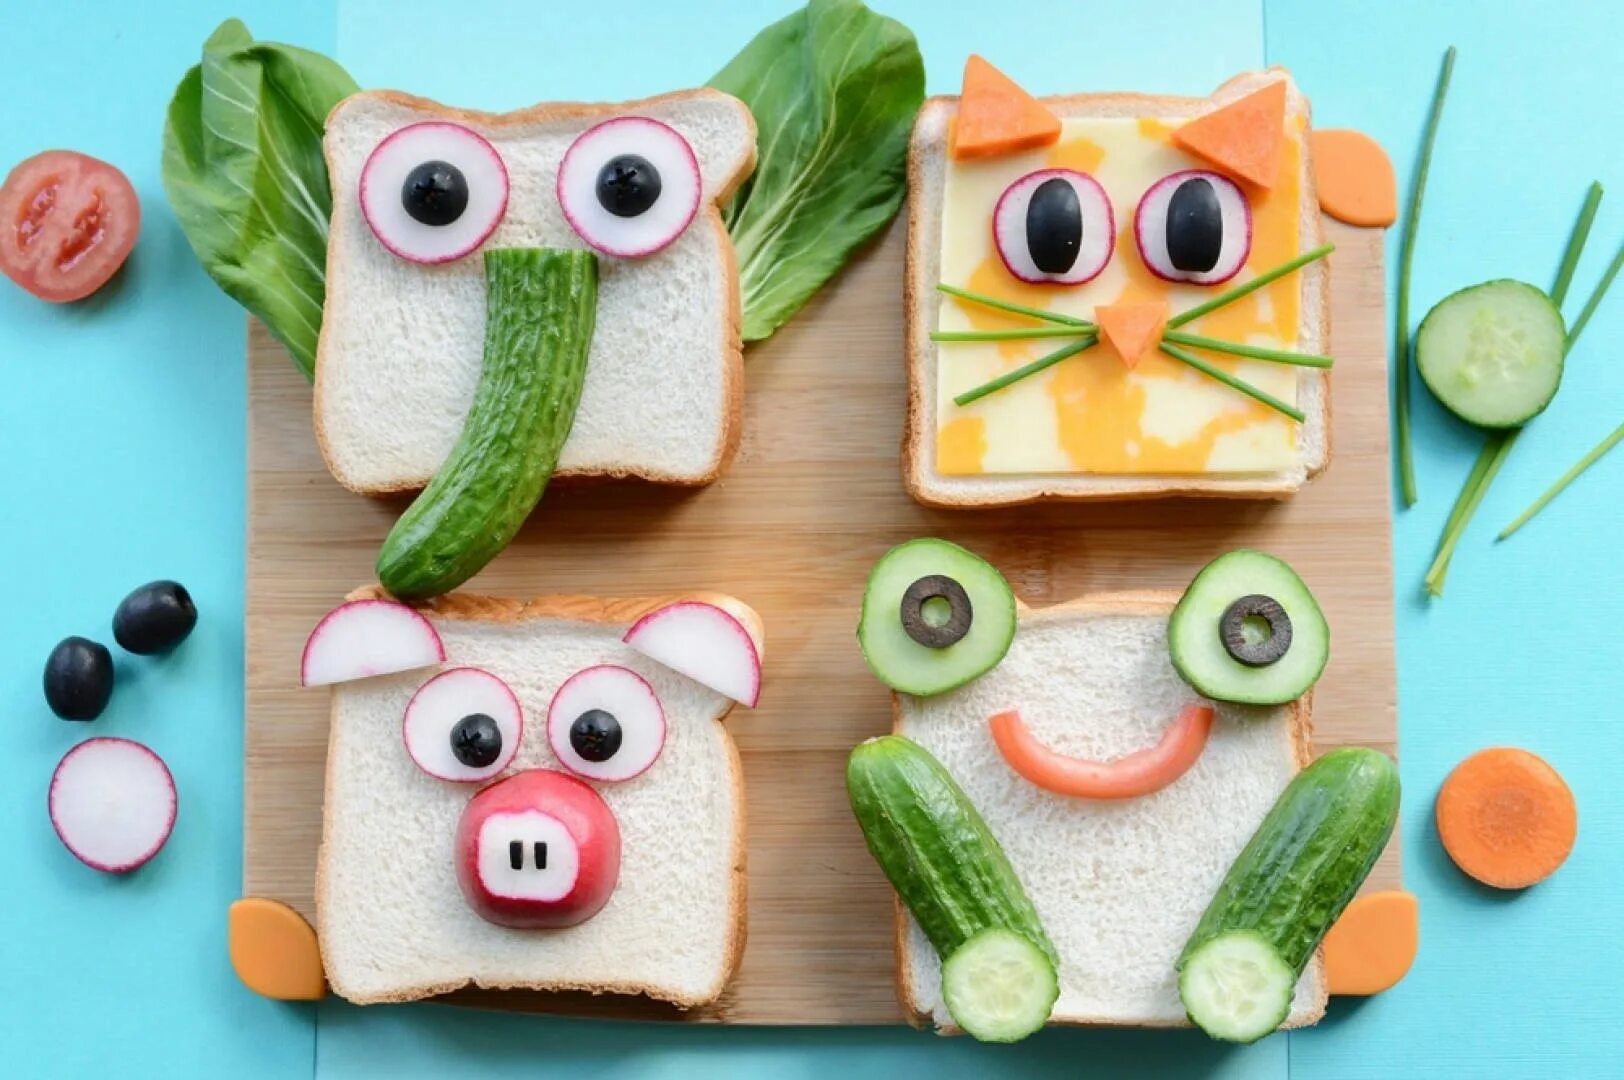 Оригинальные бутерброды для детей. Забавные бутерброды для детей. Необычные бутерброды для детей. Красивые бутерброды для детей. Что ребенку можно приготовить вкусно